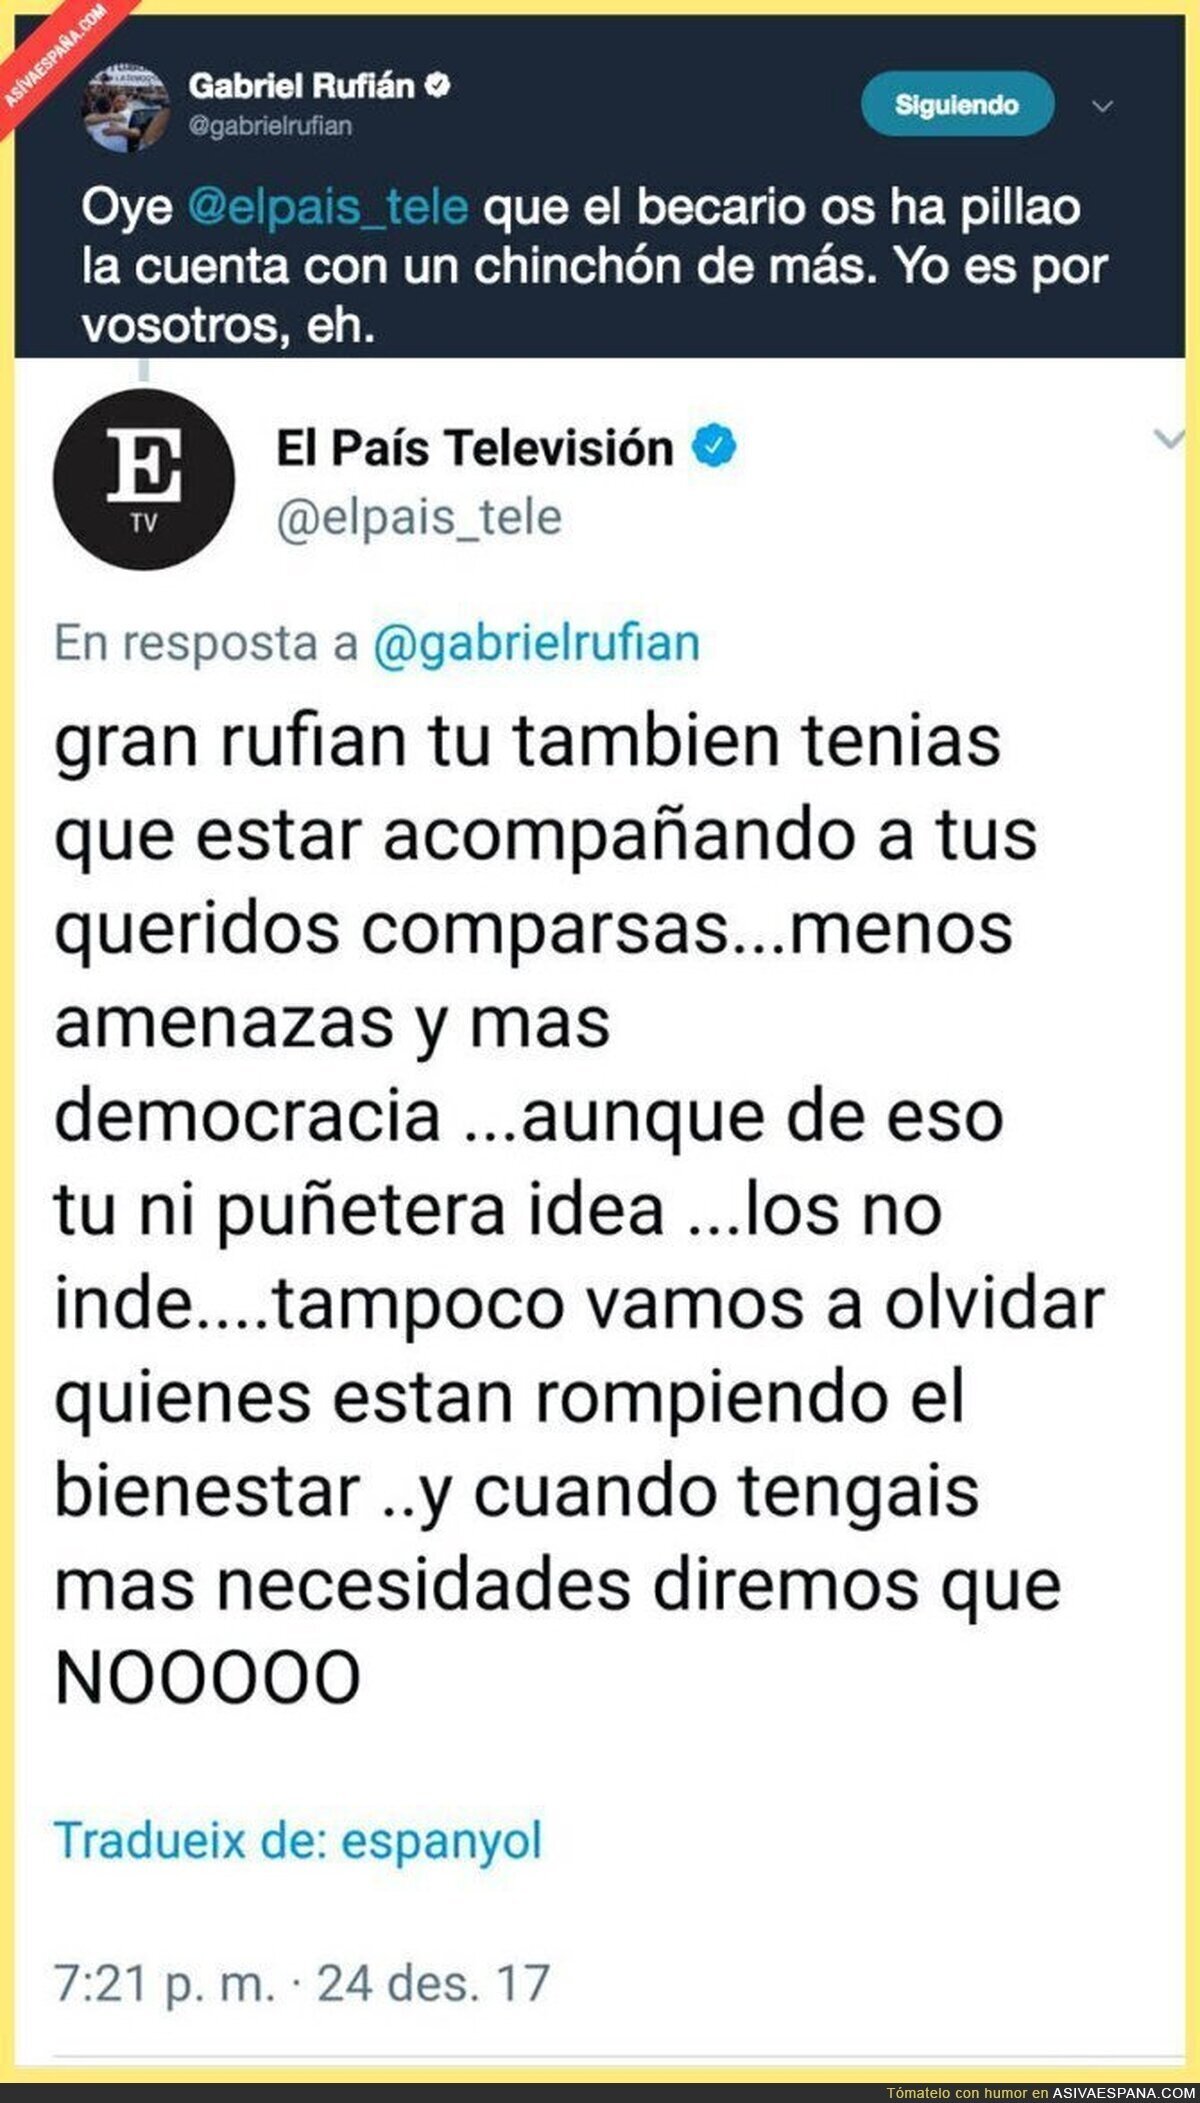 El diario 'El País' tuitea este tuit a Gabriel Rufián y seguidamente lo borran al confundirse de cuenta